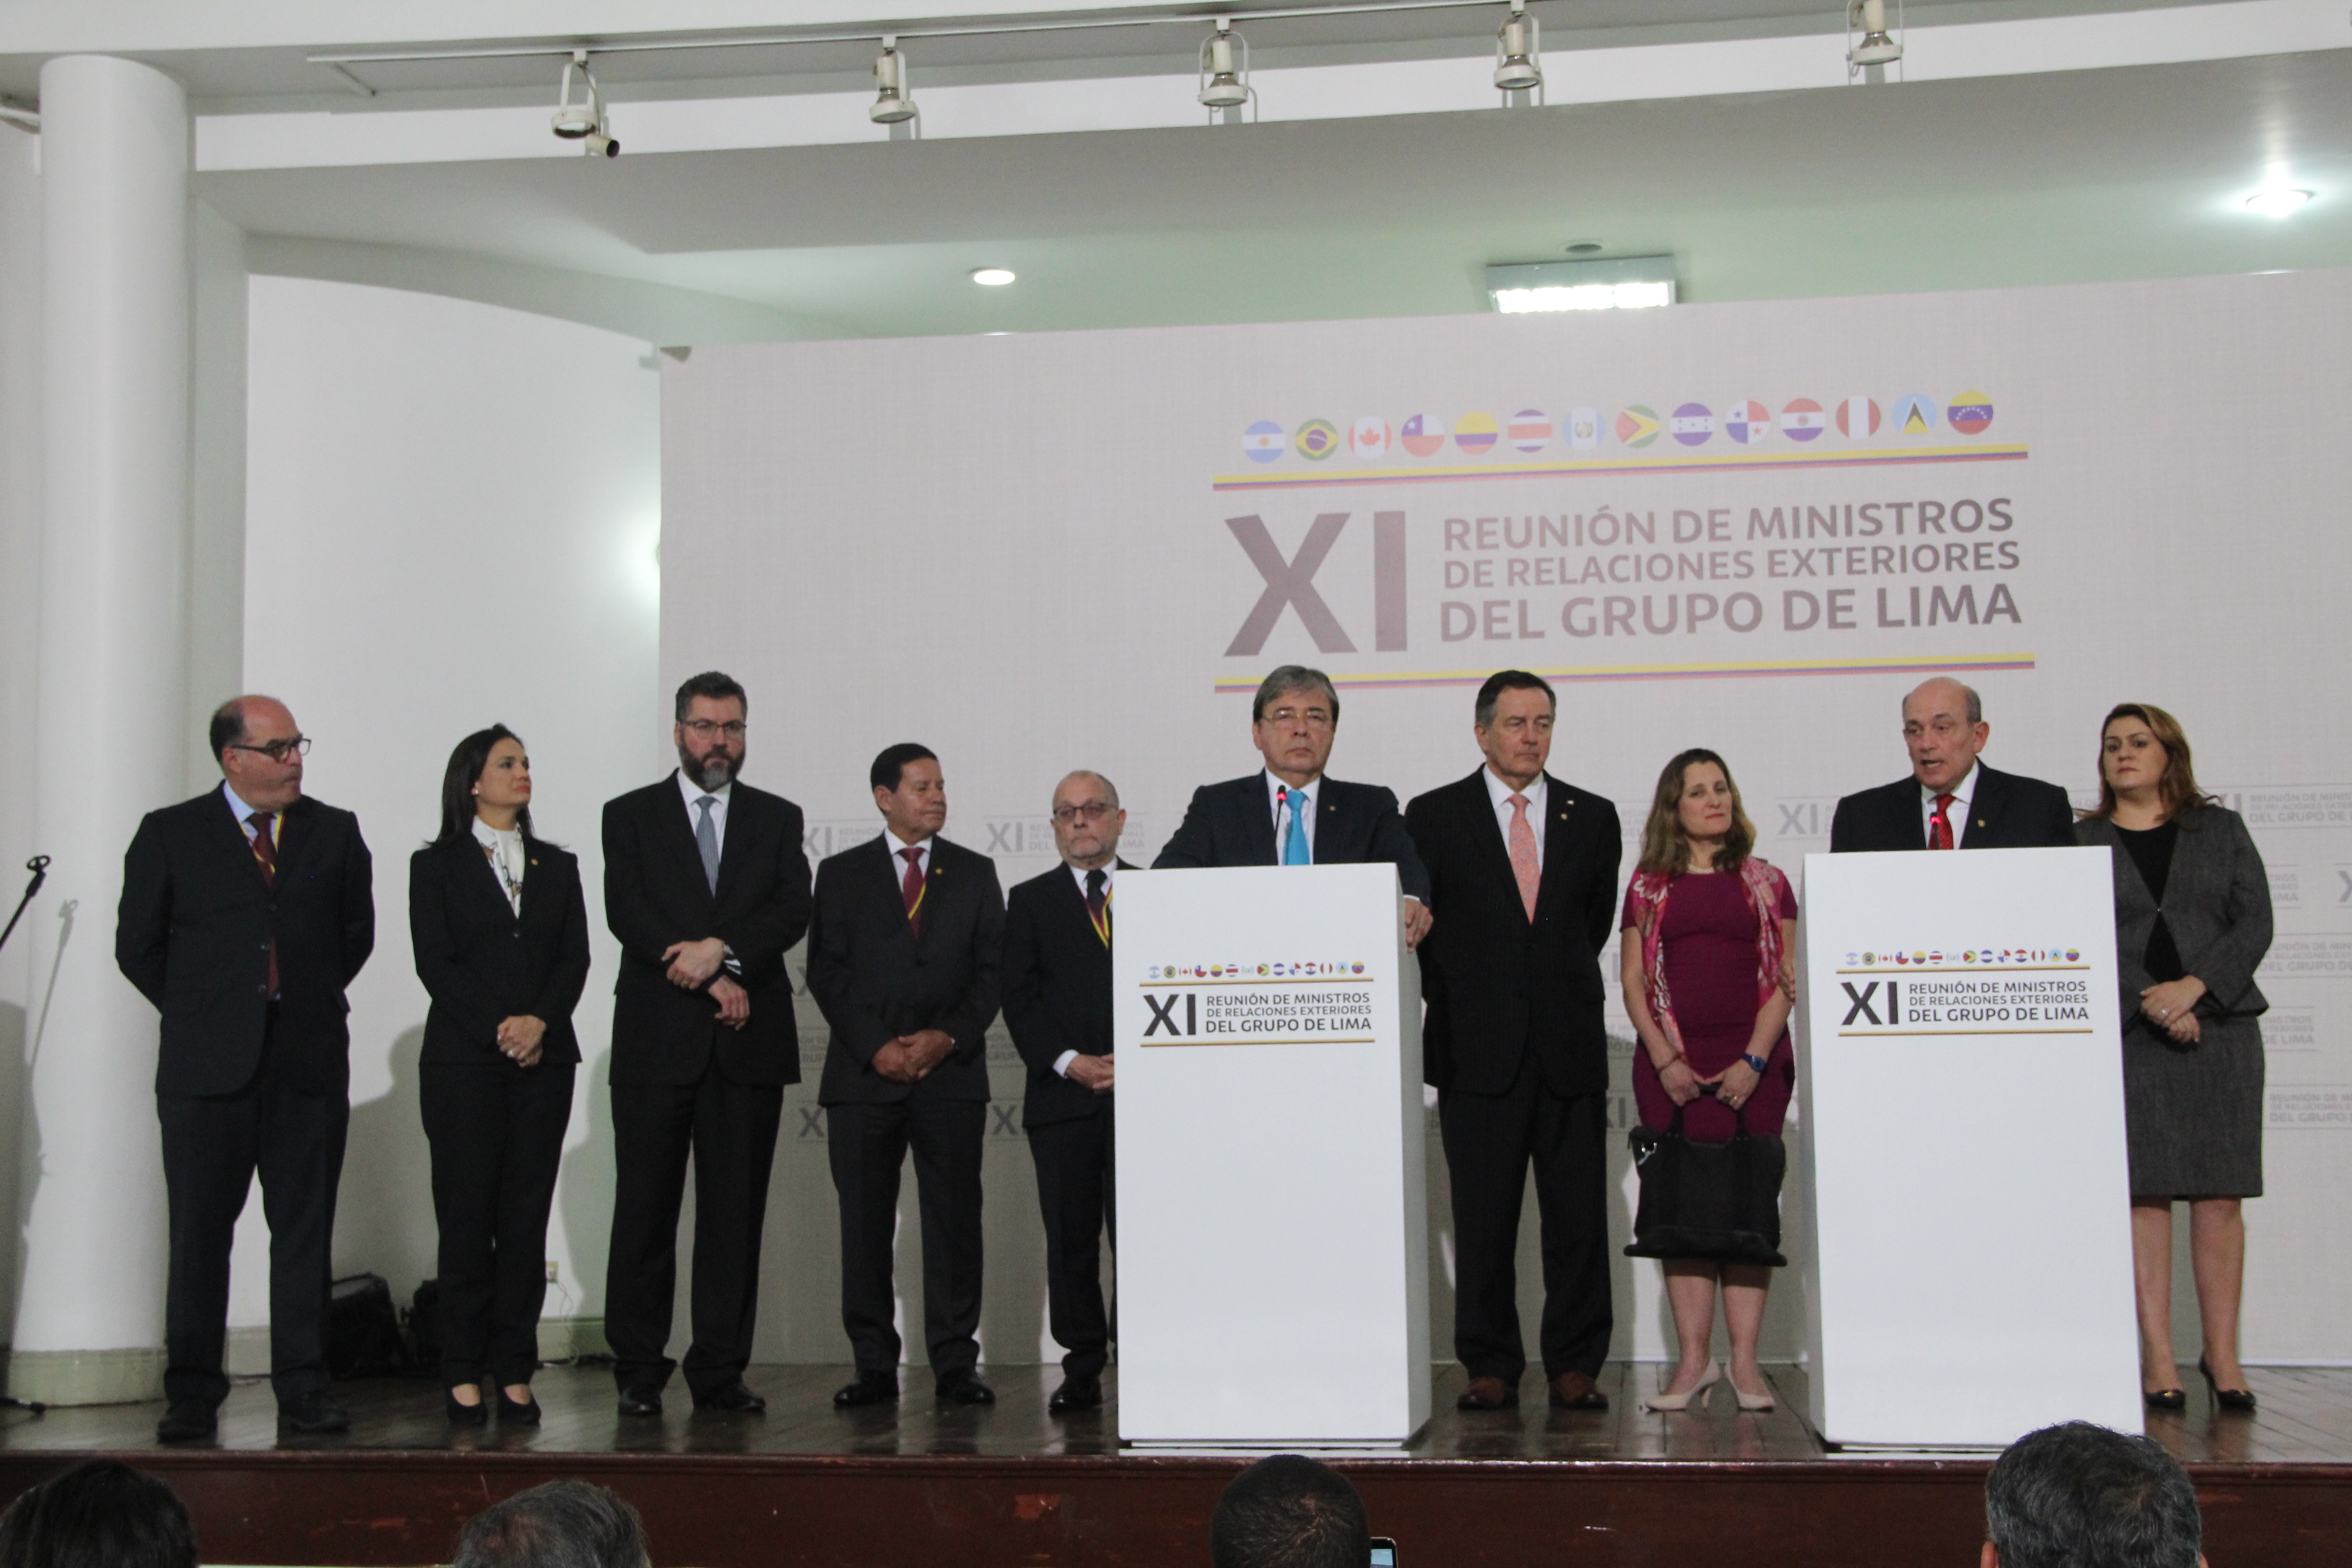 Declaración del Grupo de Lima en apoyo al proceso de transición democrática de Venezuela